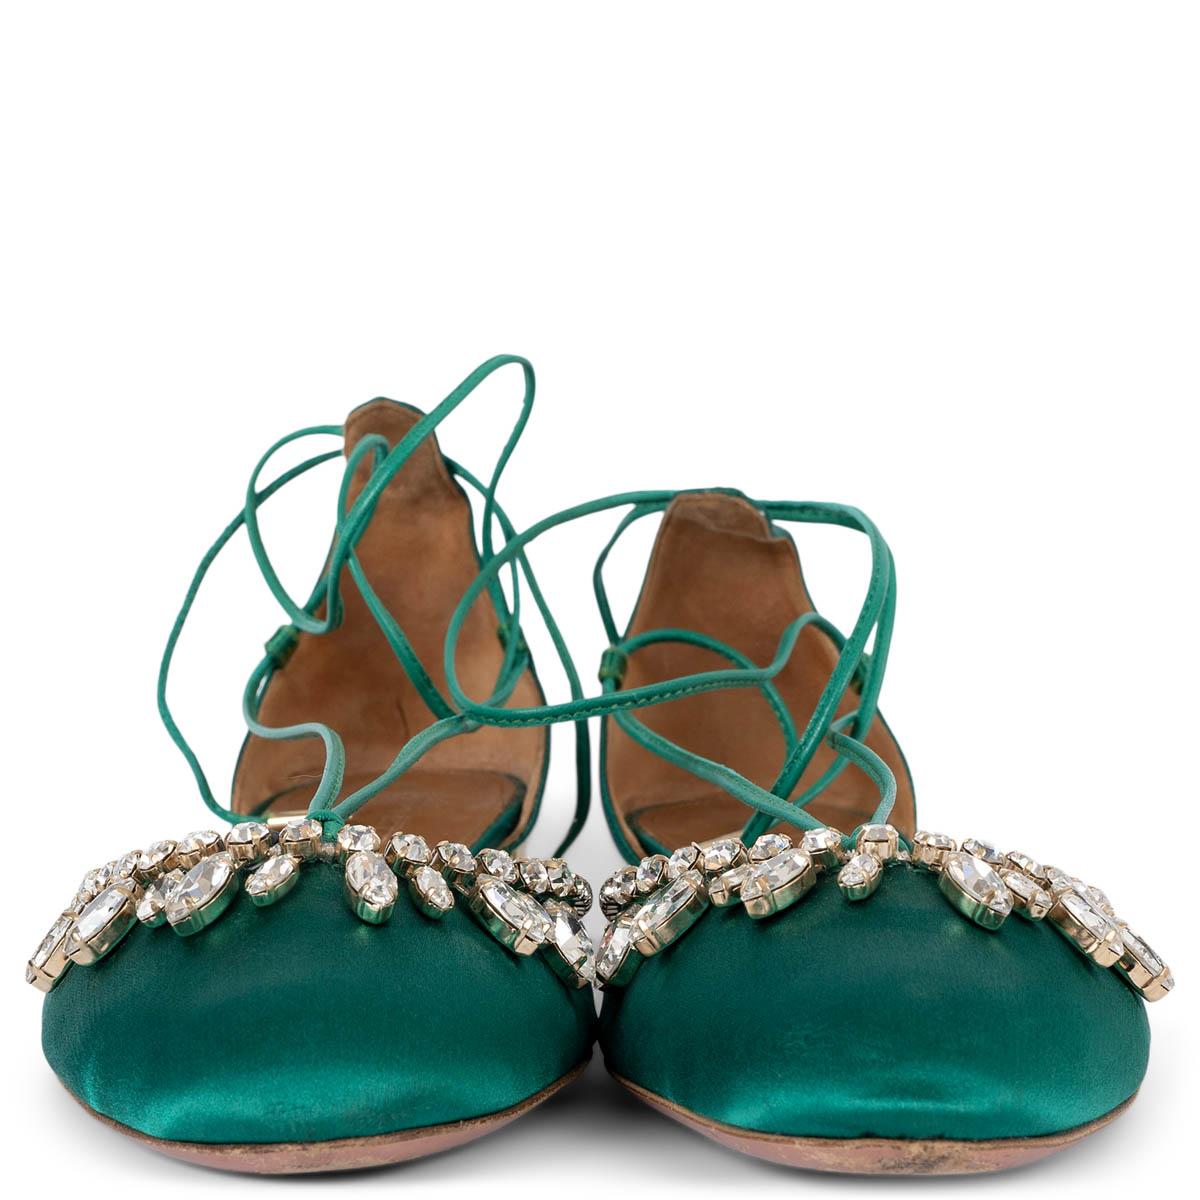 Authentiques à 100%, les chaussures plates à lacets Alexa, ornées de cristaux, sont réalisées en satin vert émeraude et dotées d'un talon en métal doré. Ils ont été portés et présentent une légère usure aux extrémités. En général en excellent état.